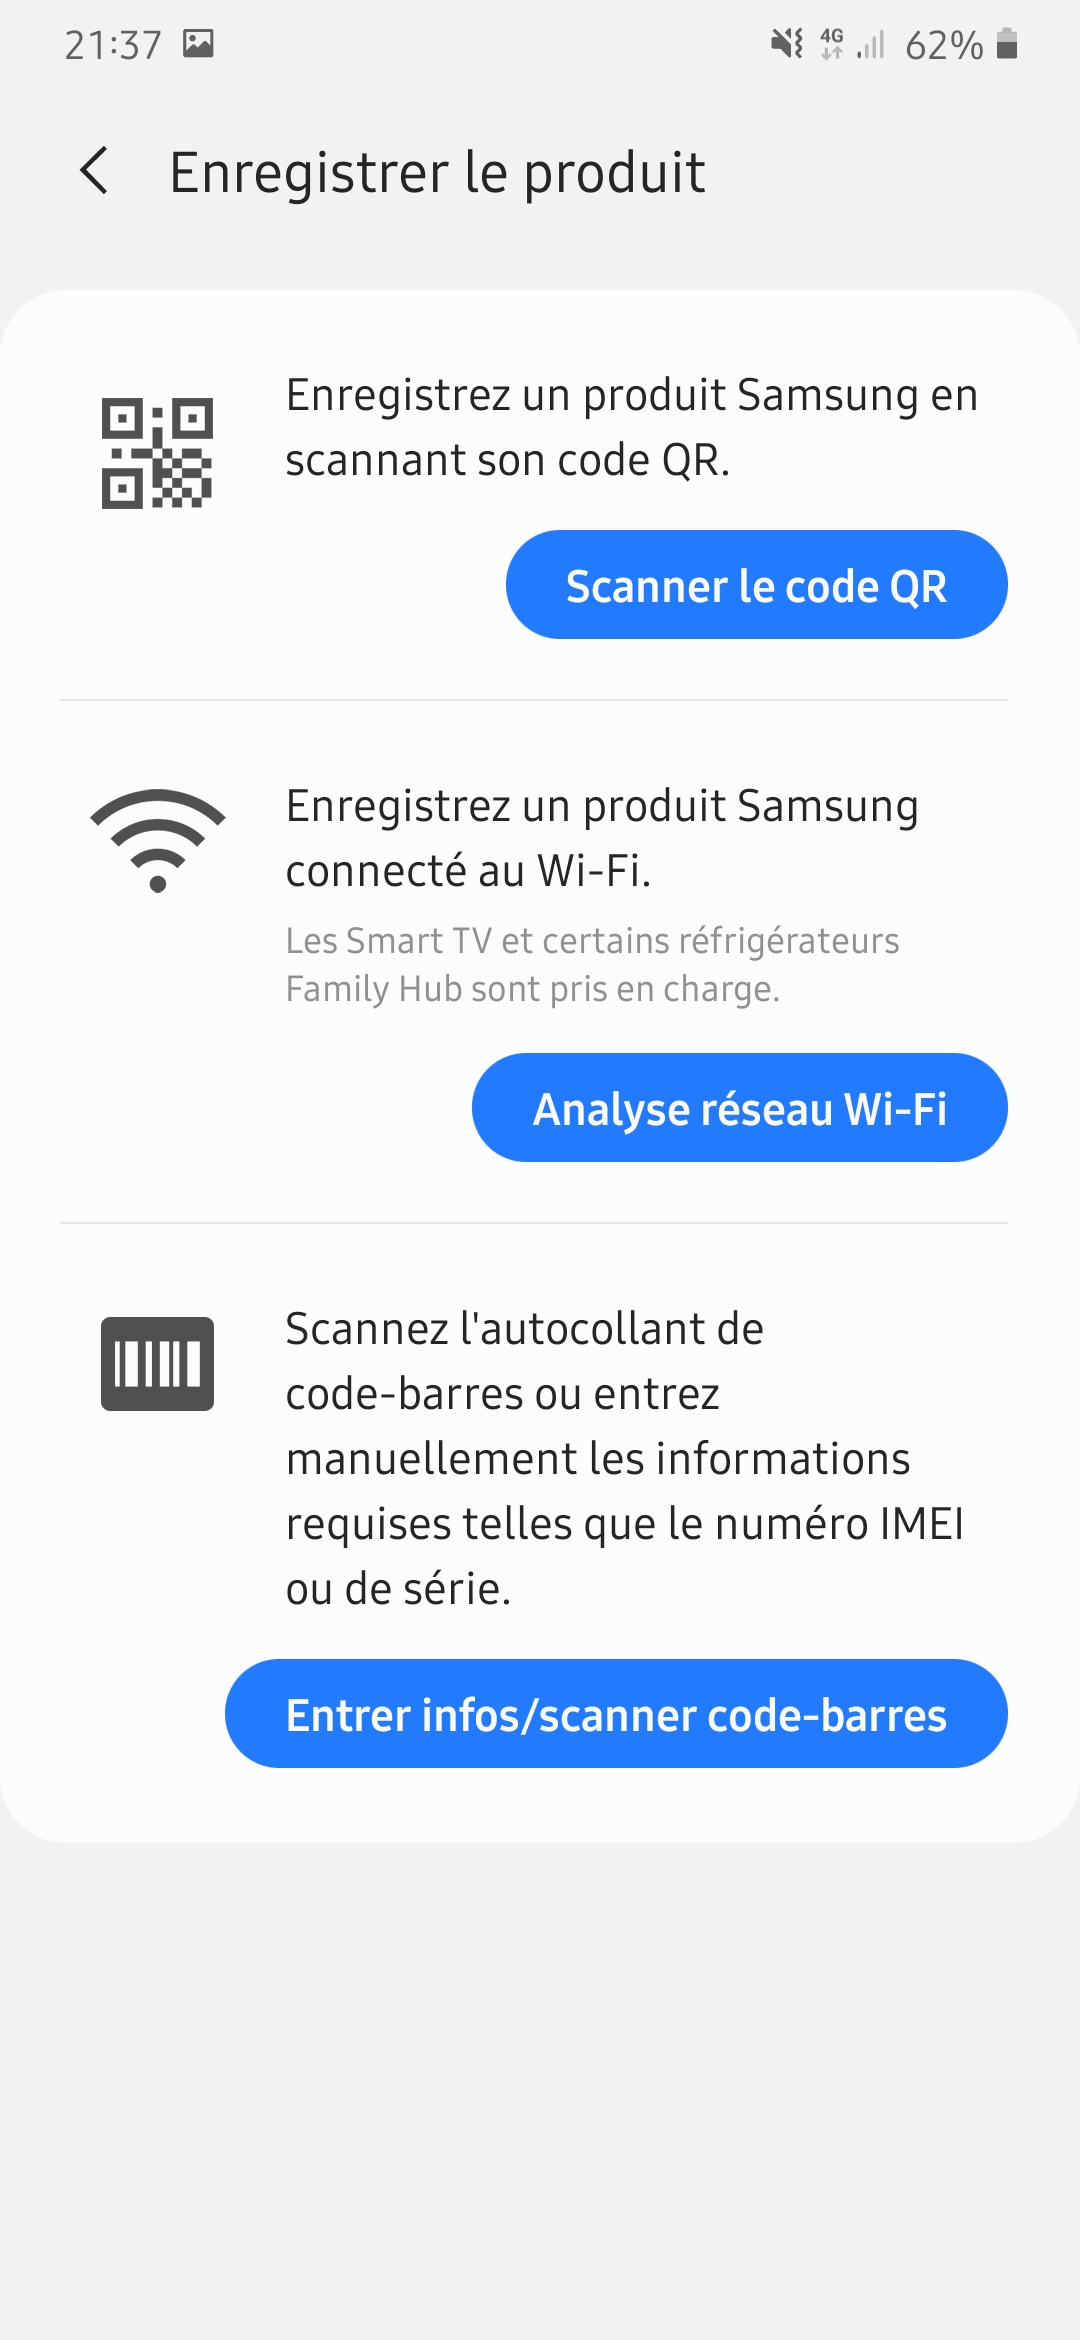 Enregistrement nouveau smartphone - Samsung Community